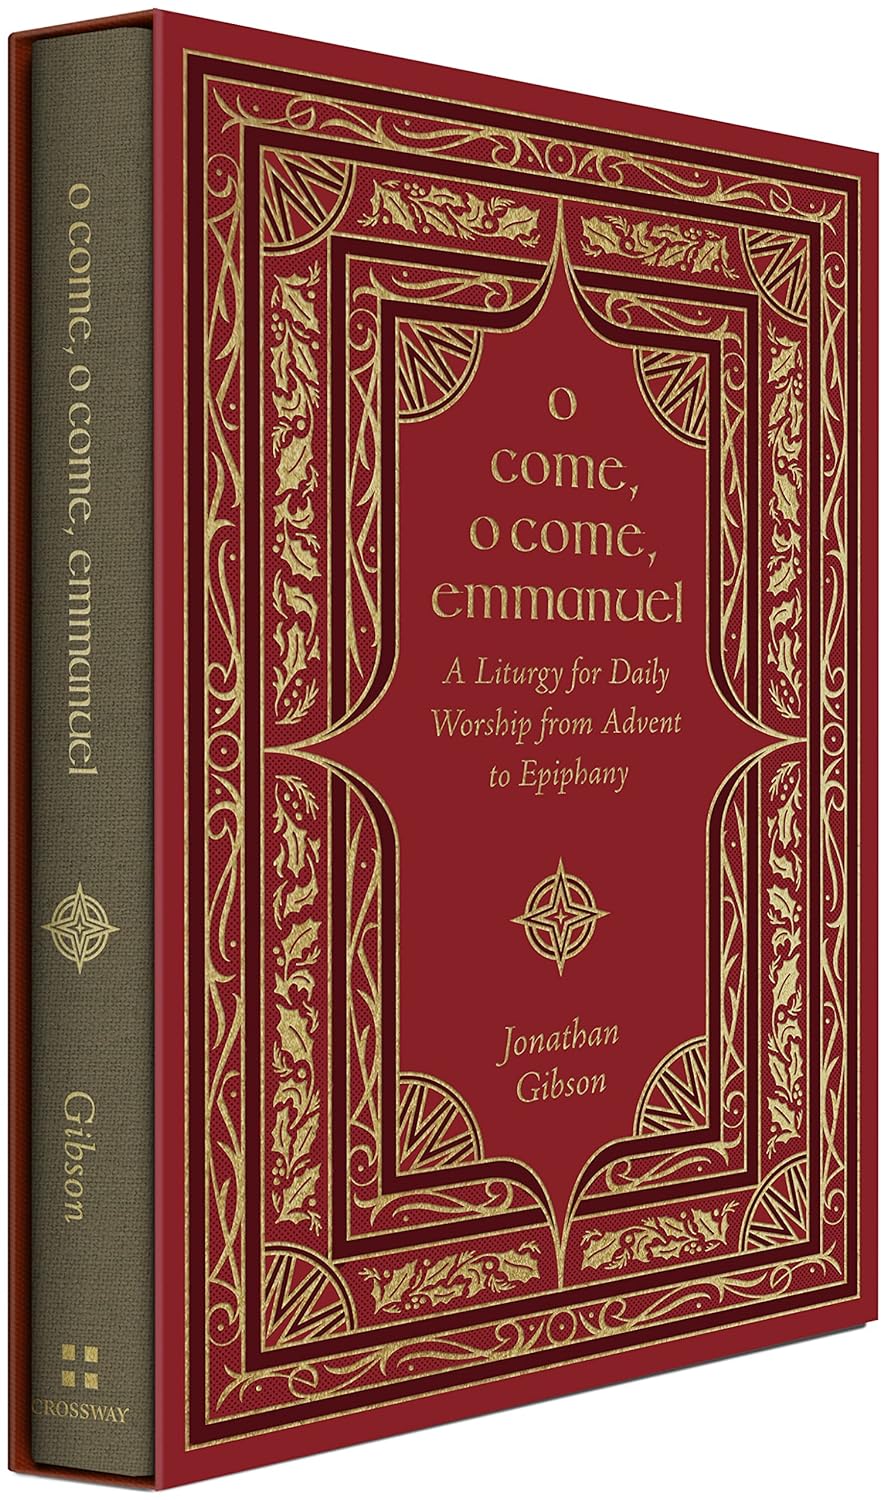 O Come O Come Emmanuel (Gibson - hardcover)